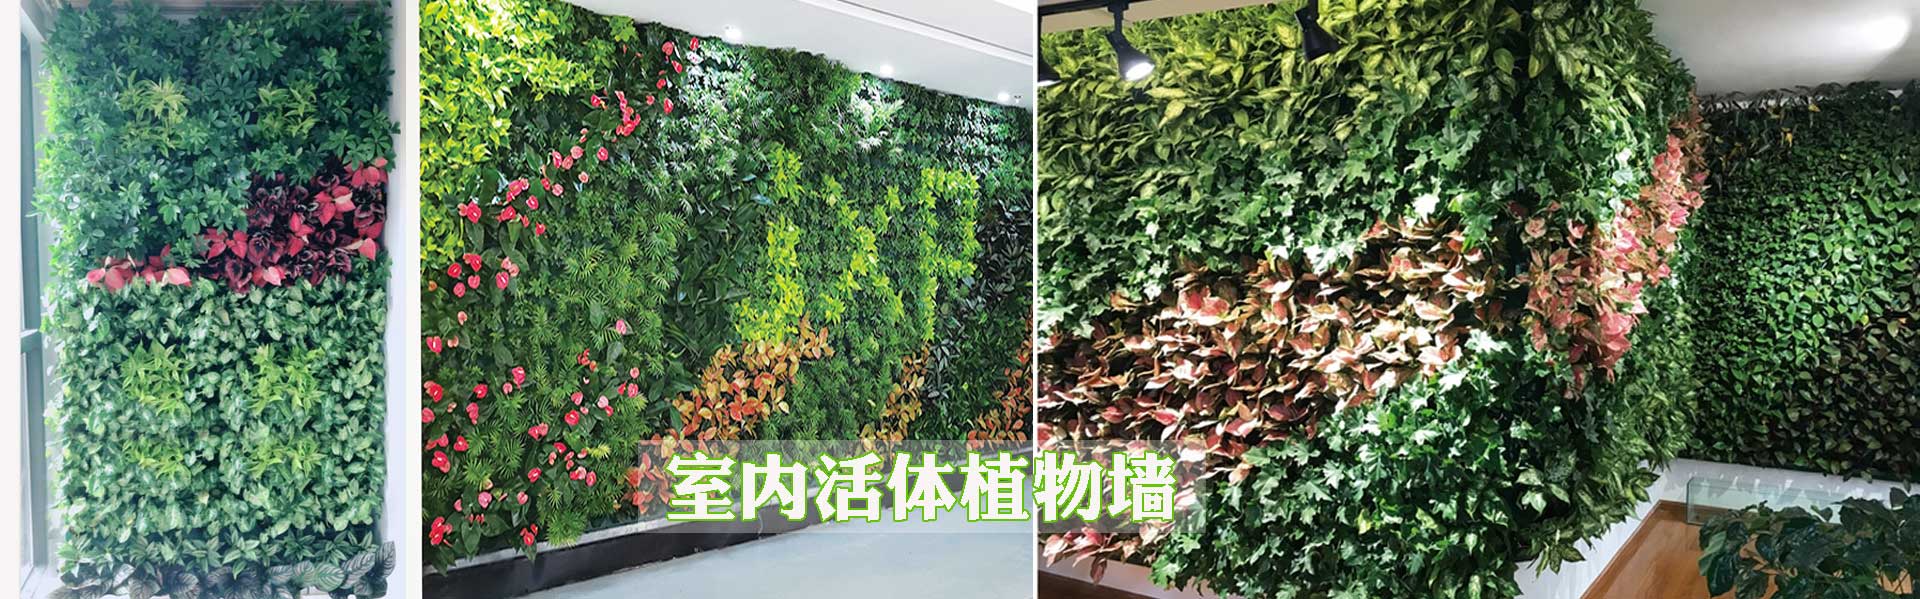 室内活体植物墙